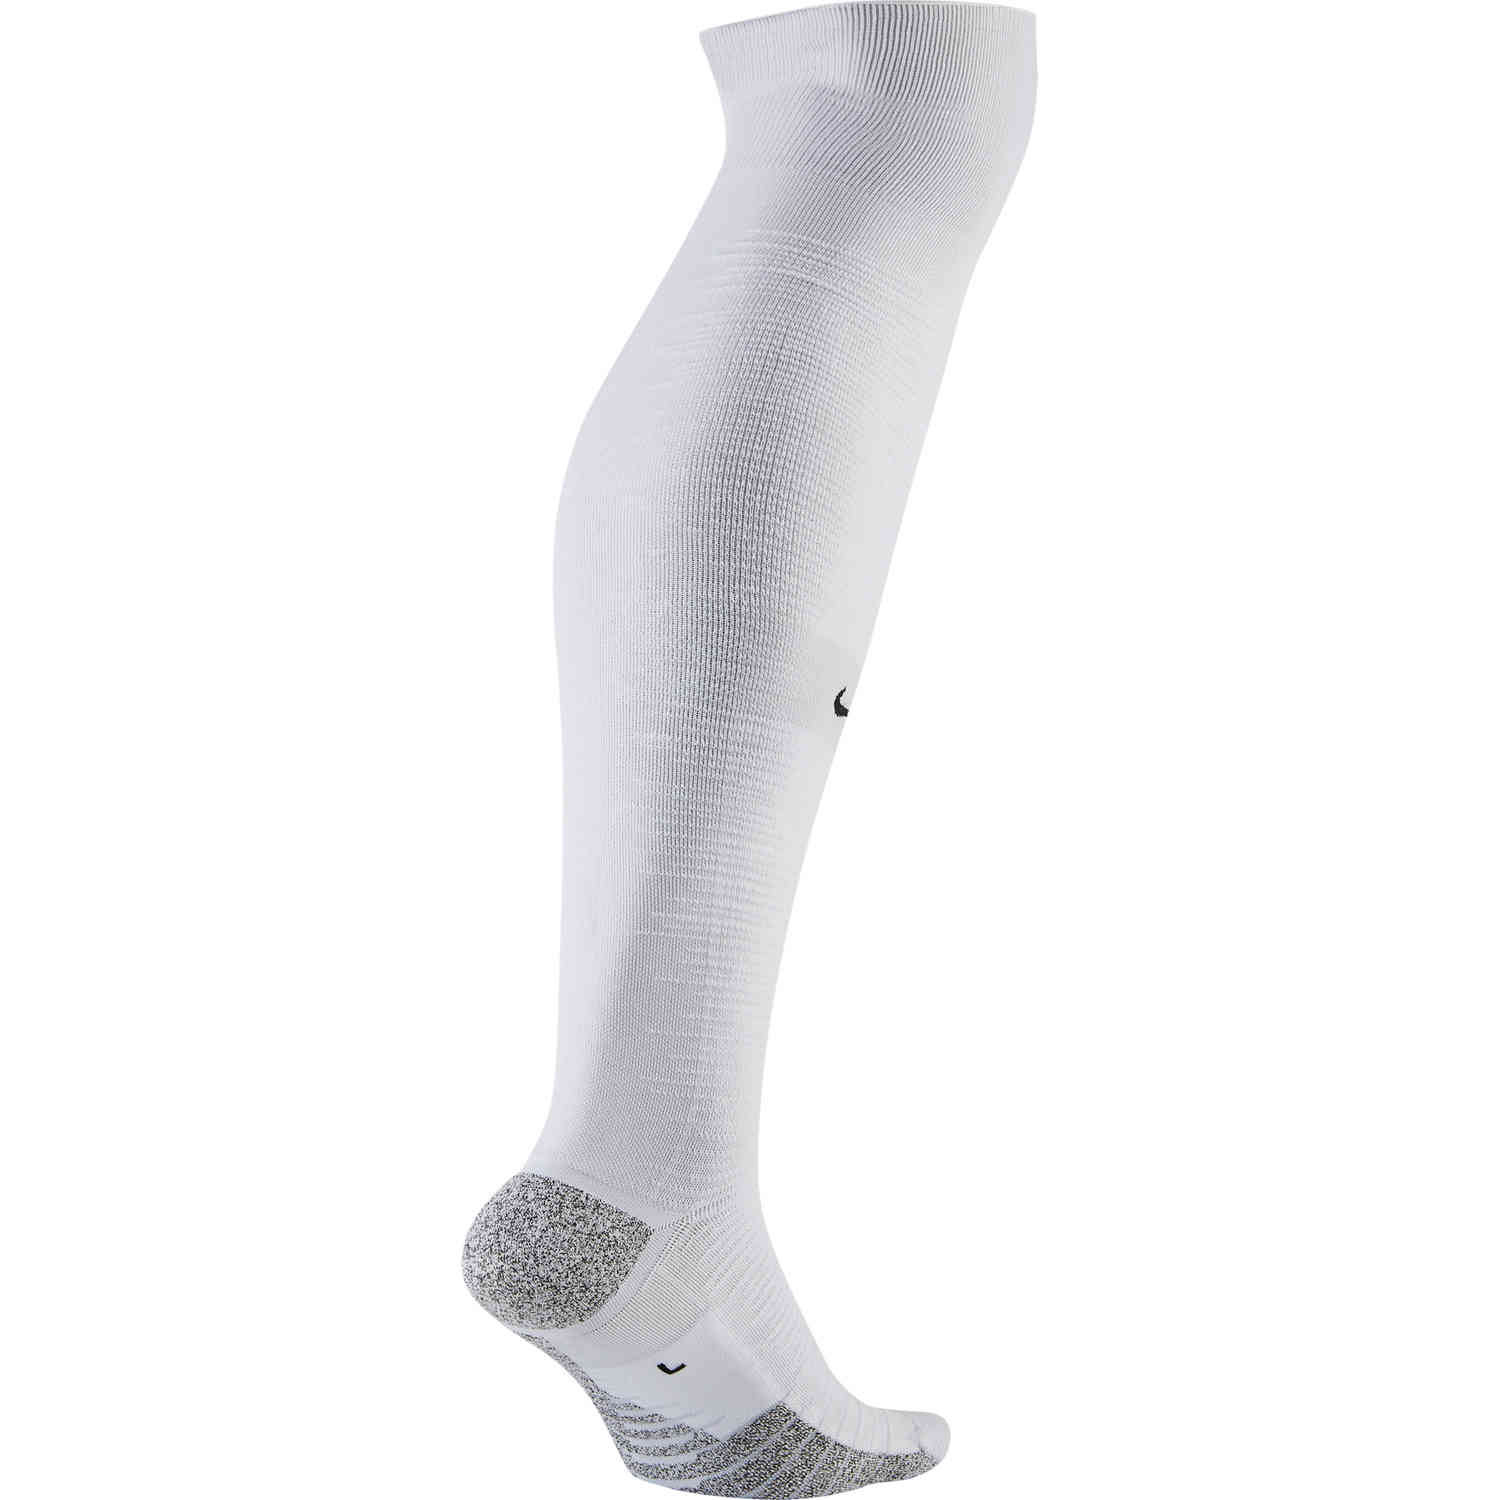 NikeGrip Strike Light Team Soccer Socks - White/Pure Platinum - SoccerPro